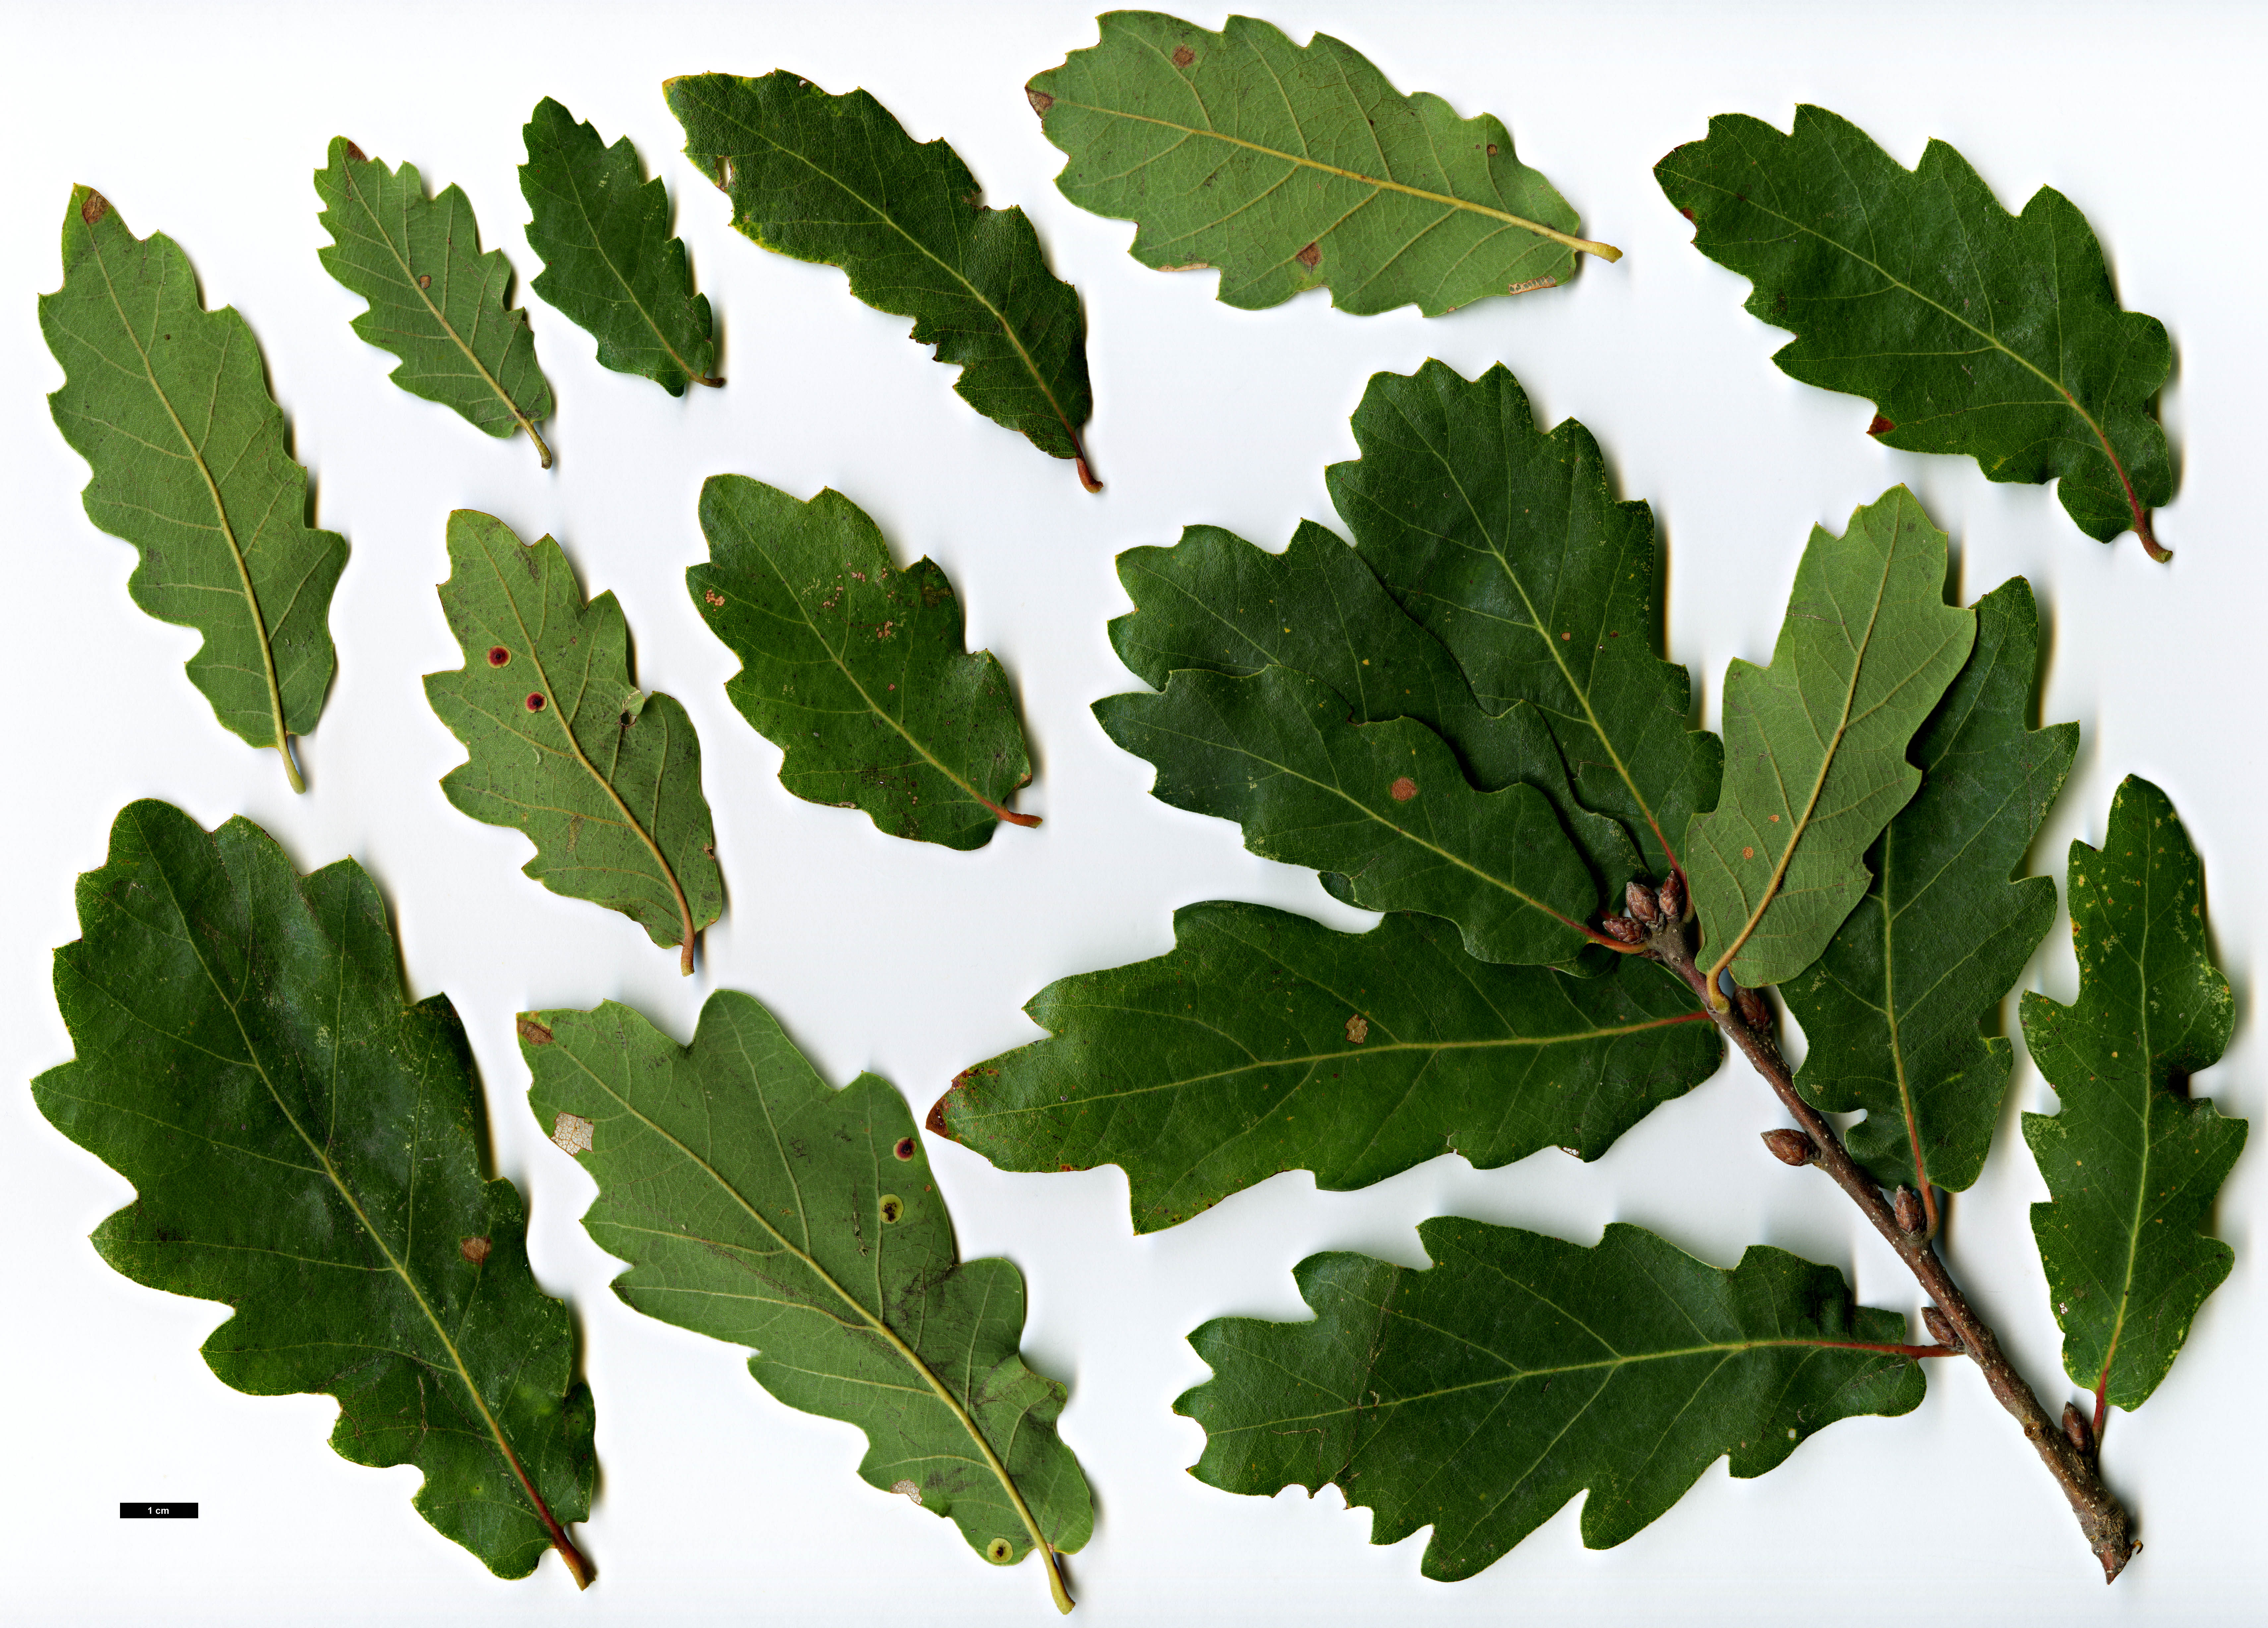 High resolution image: Family: Fagaceae - Genus: Quercus - Taxon: robur - SpeciesSub: subsp. estremadurensis